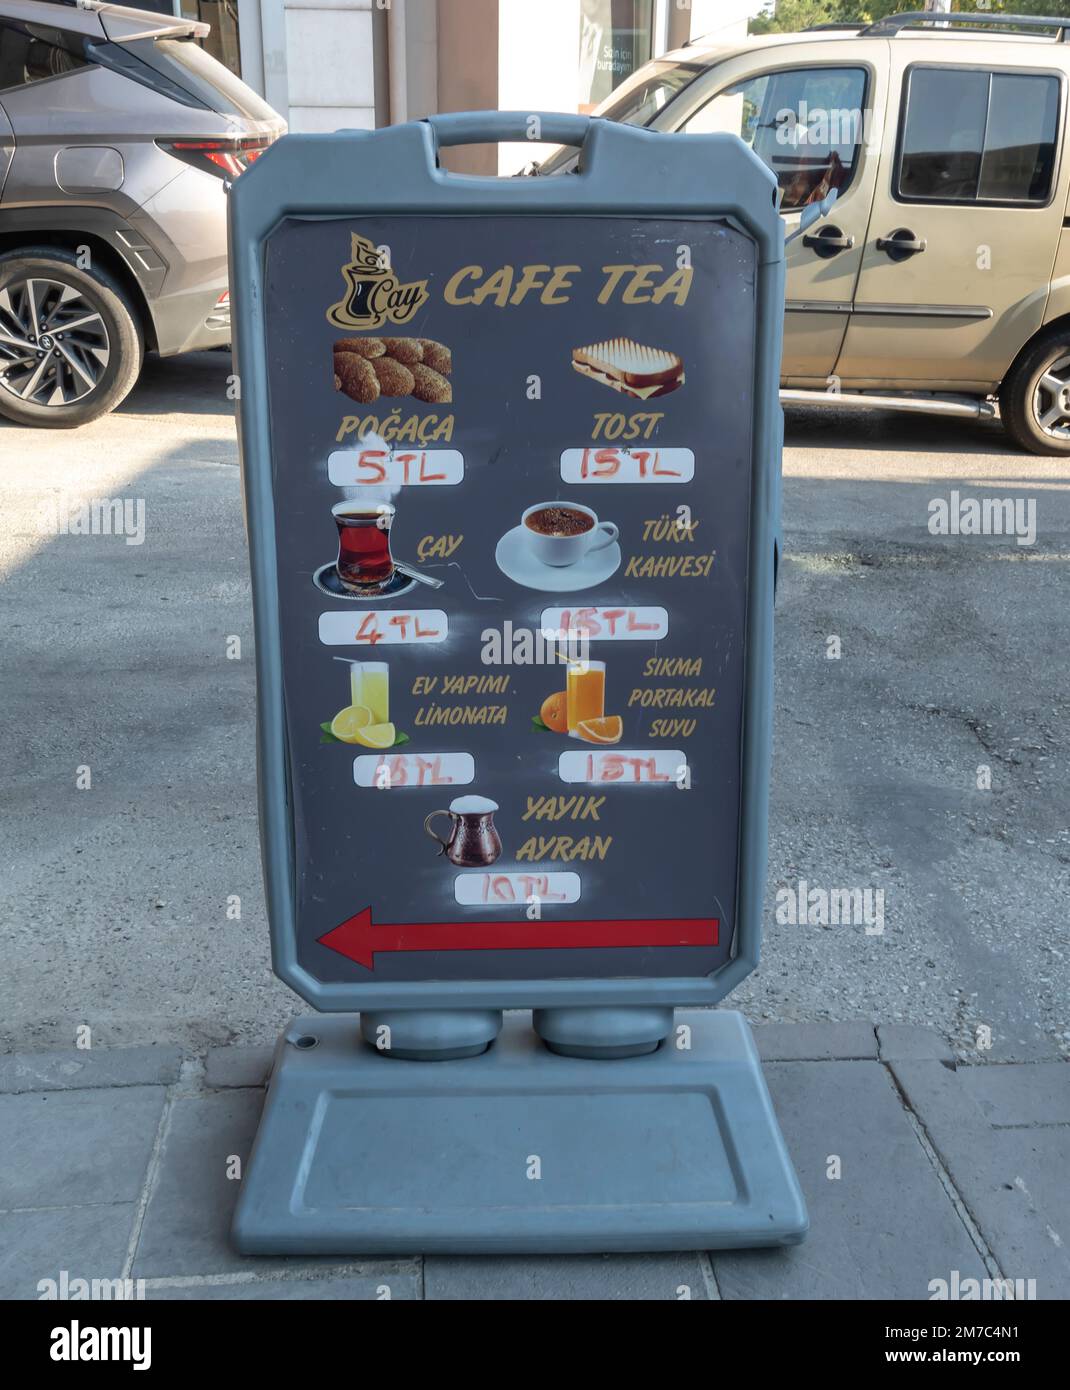 Preise für Cafés in Ankara. Posterkarte mit Kaffee und Tee und Preisen. Straßencafé Ankara Türkei Stockfoto